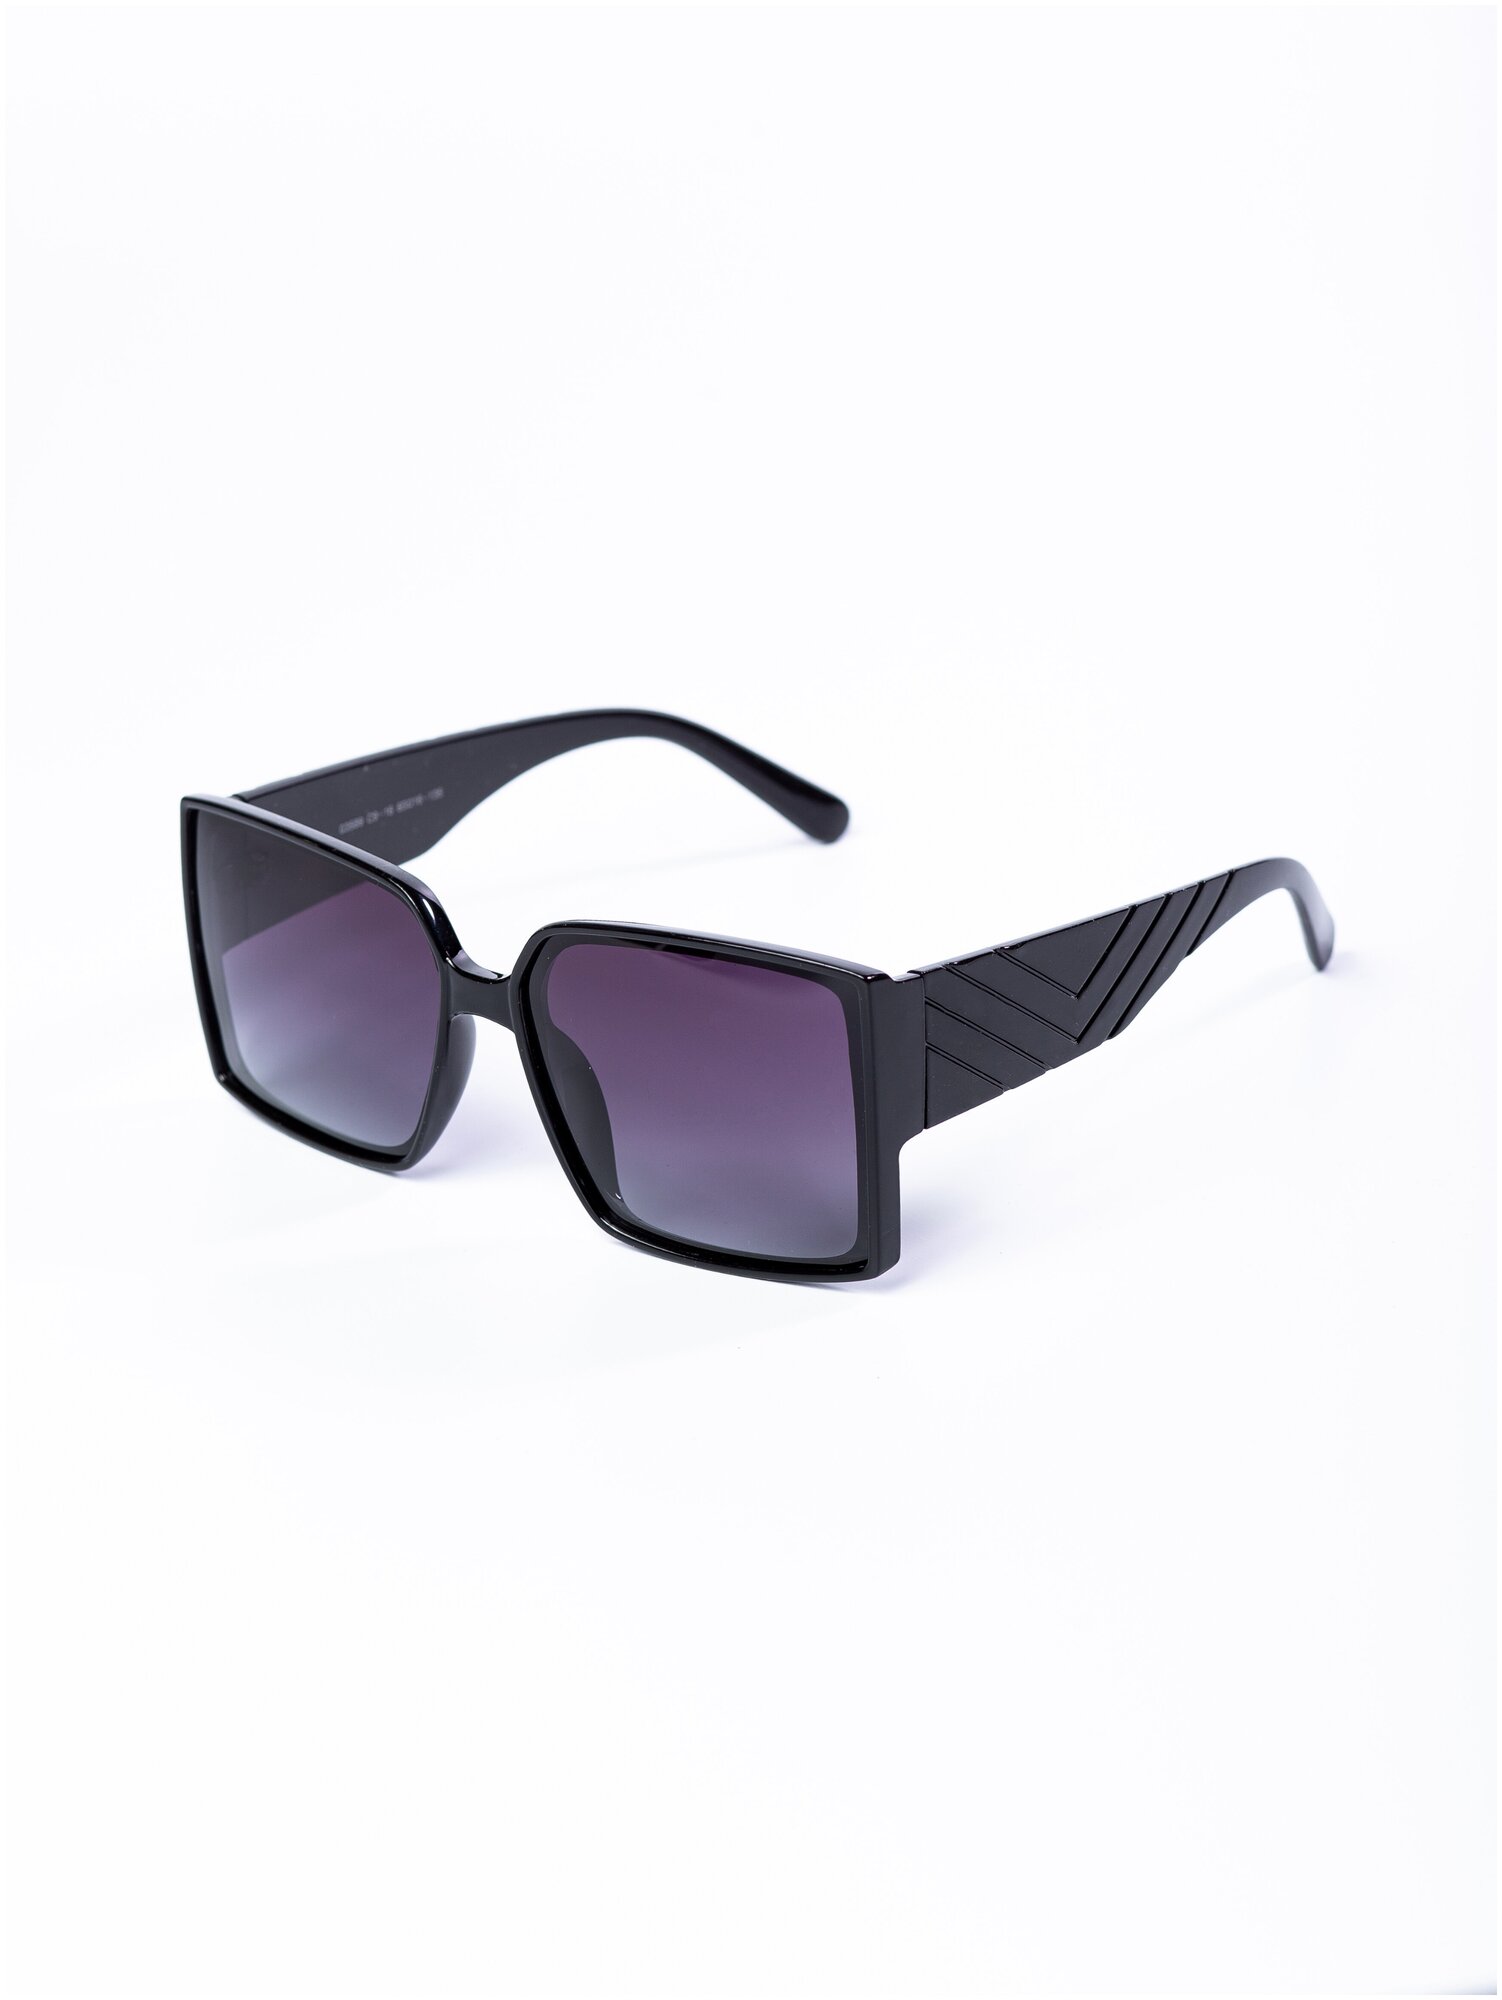 Солнцезащитные очки женские / Оправа квадратная / Стильные очки / Ультрафиолетовый фильтр / Защита UV400 / Чехол в подарок / Темные очки/ 200422544